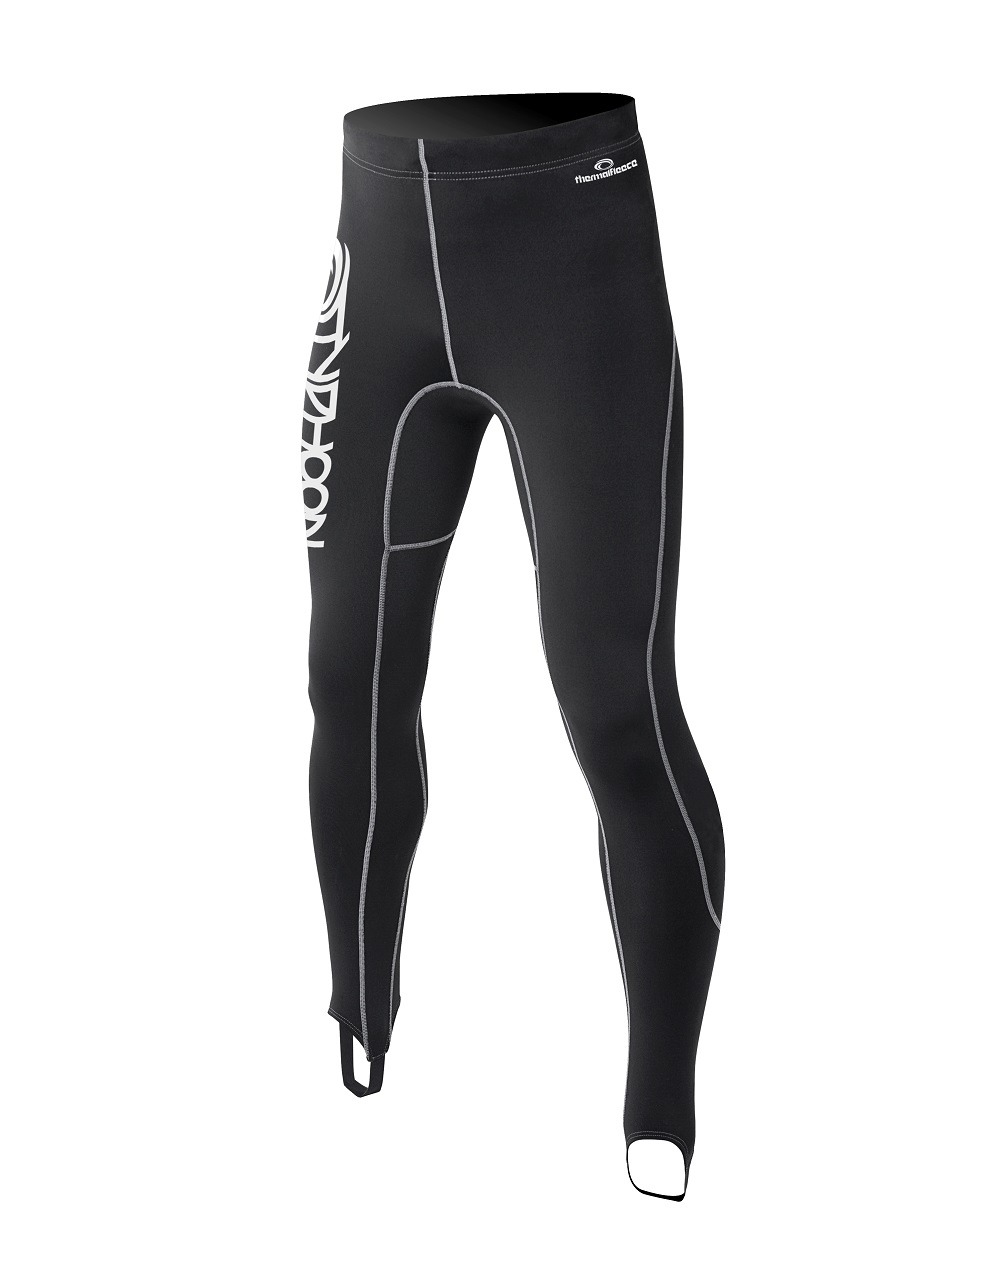 Buy REALON Jammer 3MM Neoprene Warm Trousers Large Super Stretch Mens Swim  Trunks Wetsuit Short 3mm Neoprene MenBlack L at Amazonin